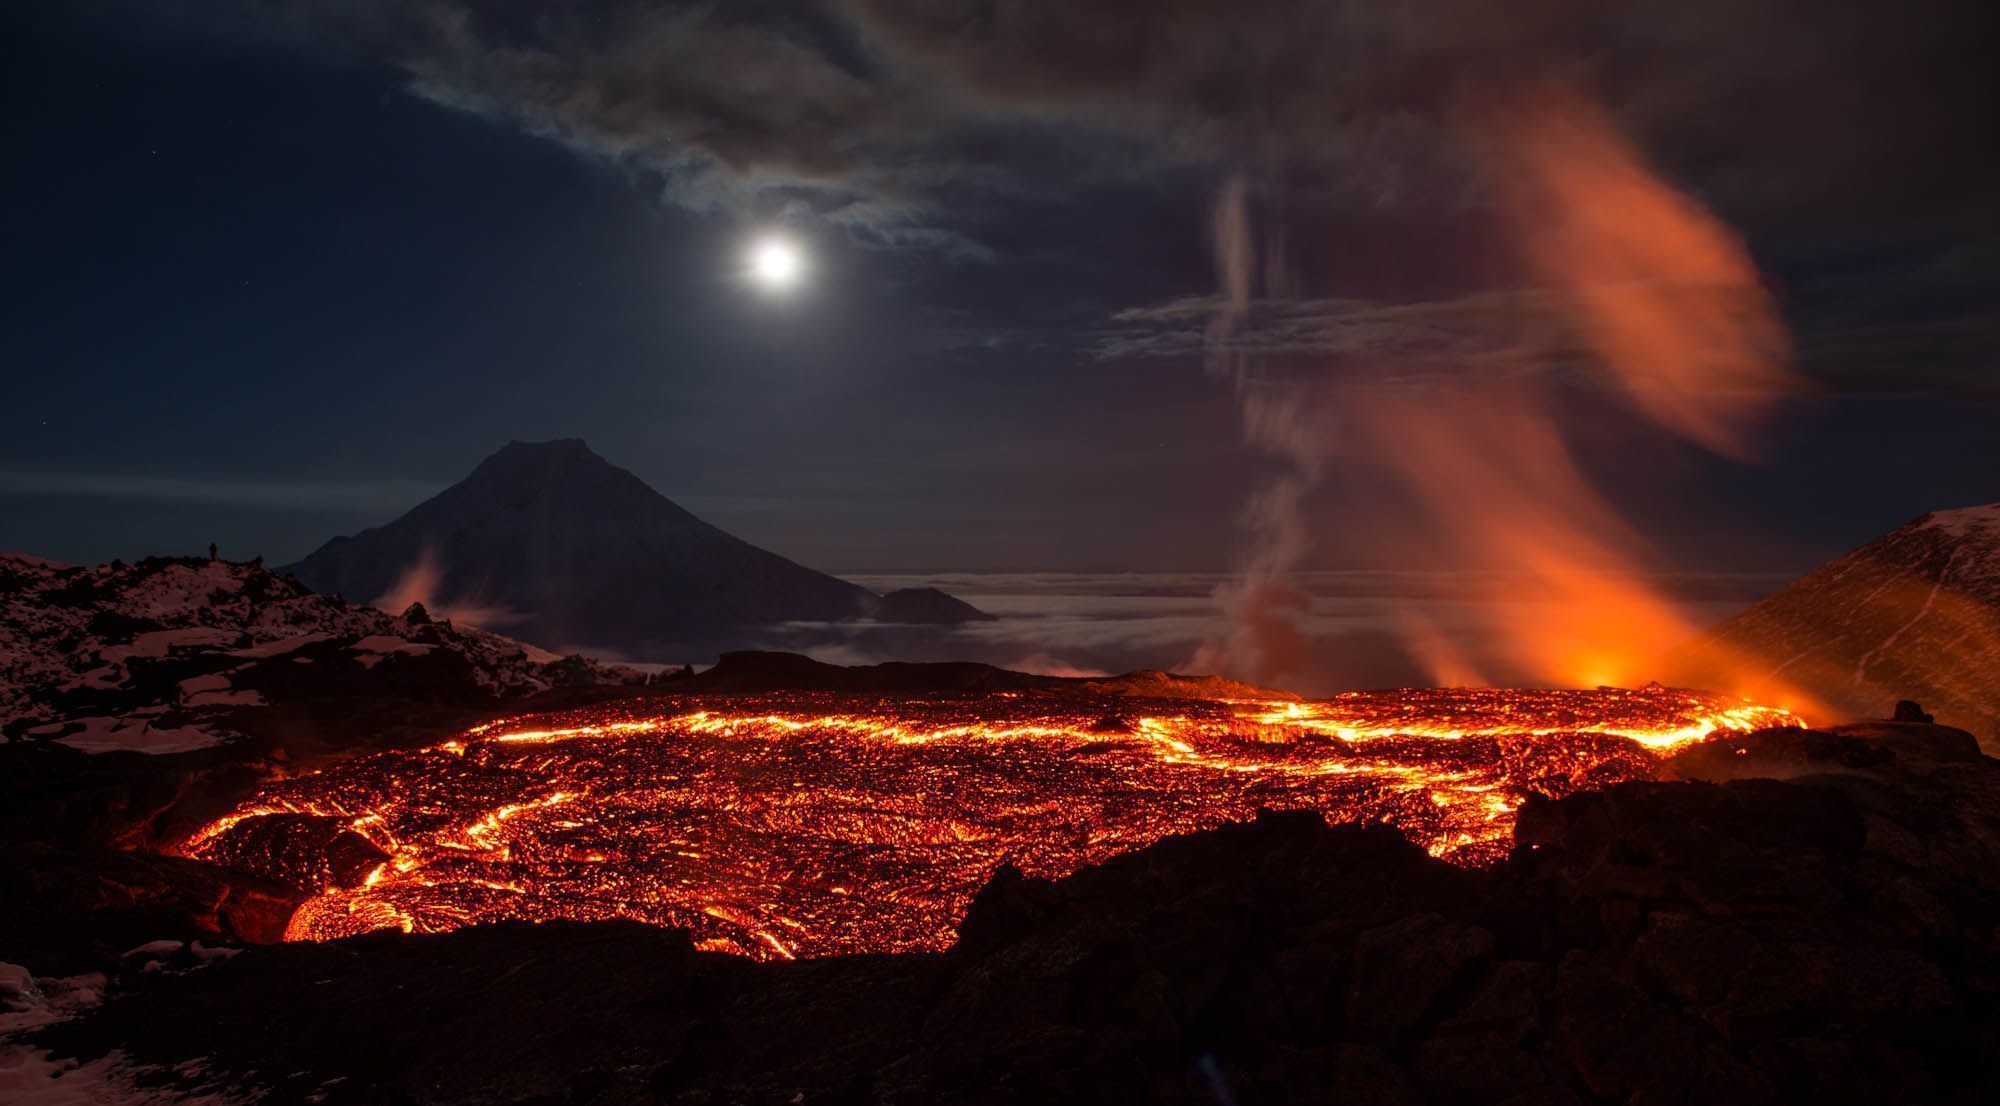 نمای ترسناک Full HD از کوه آتشفشان آتشین و گداخته در شب